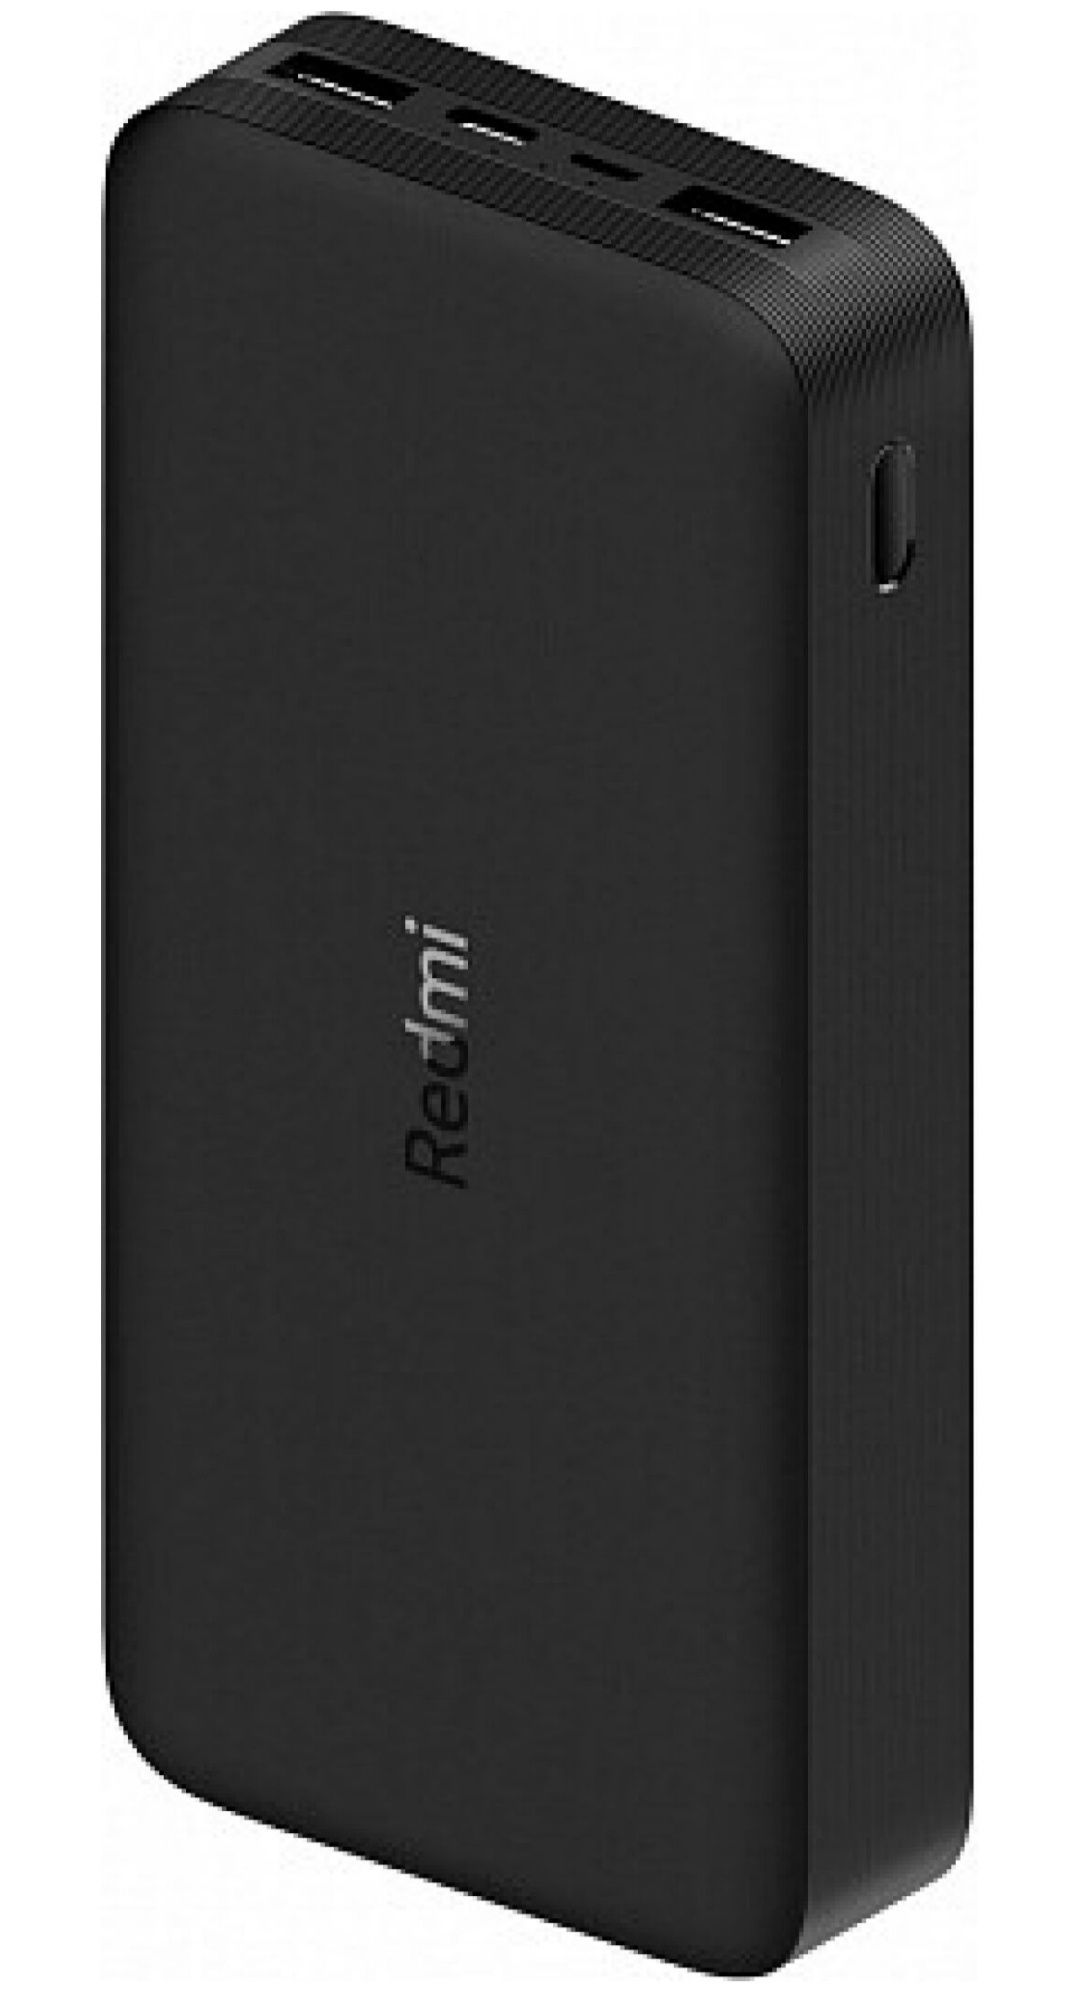 Power Bank Xiaomi Redmi 20000mAh 18W (VXN4304GL) Black